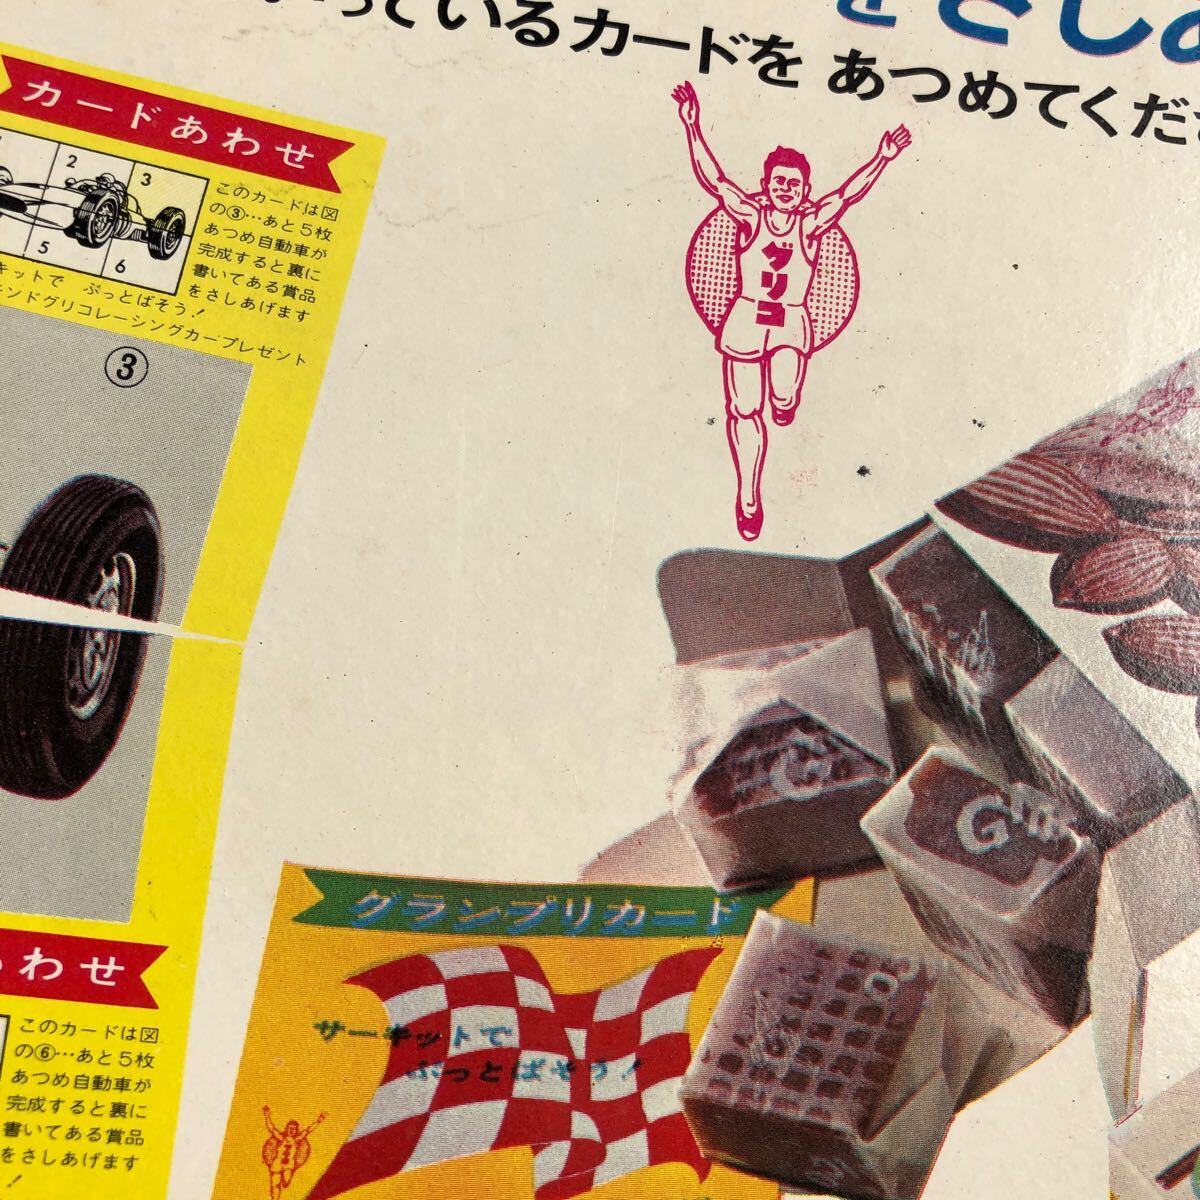 当時物 新アーモンド グリコ 店頭POP ディスプレイ 広告 カード合わせ レーシングカー 昭和レトロ 懐かしいお菓子 昔のお店の画像7